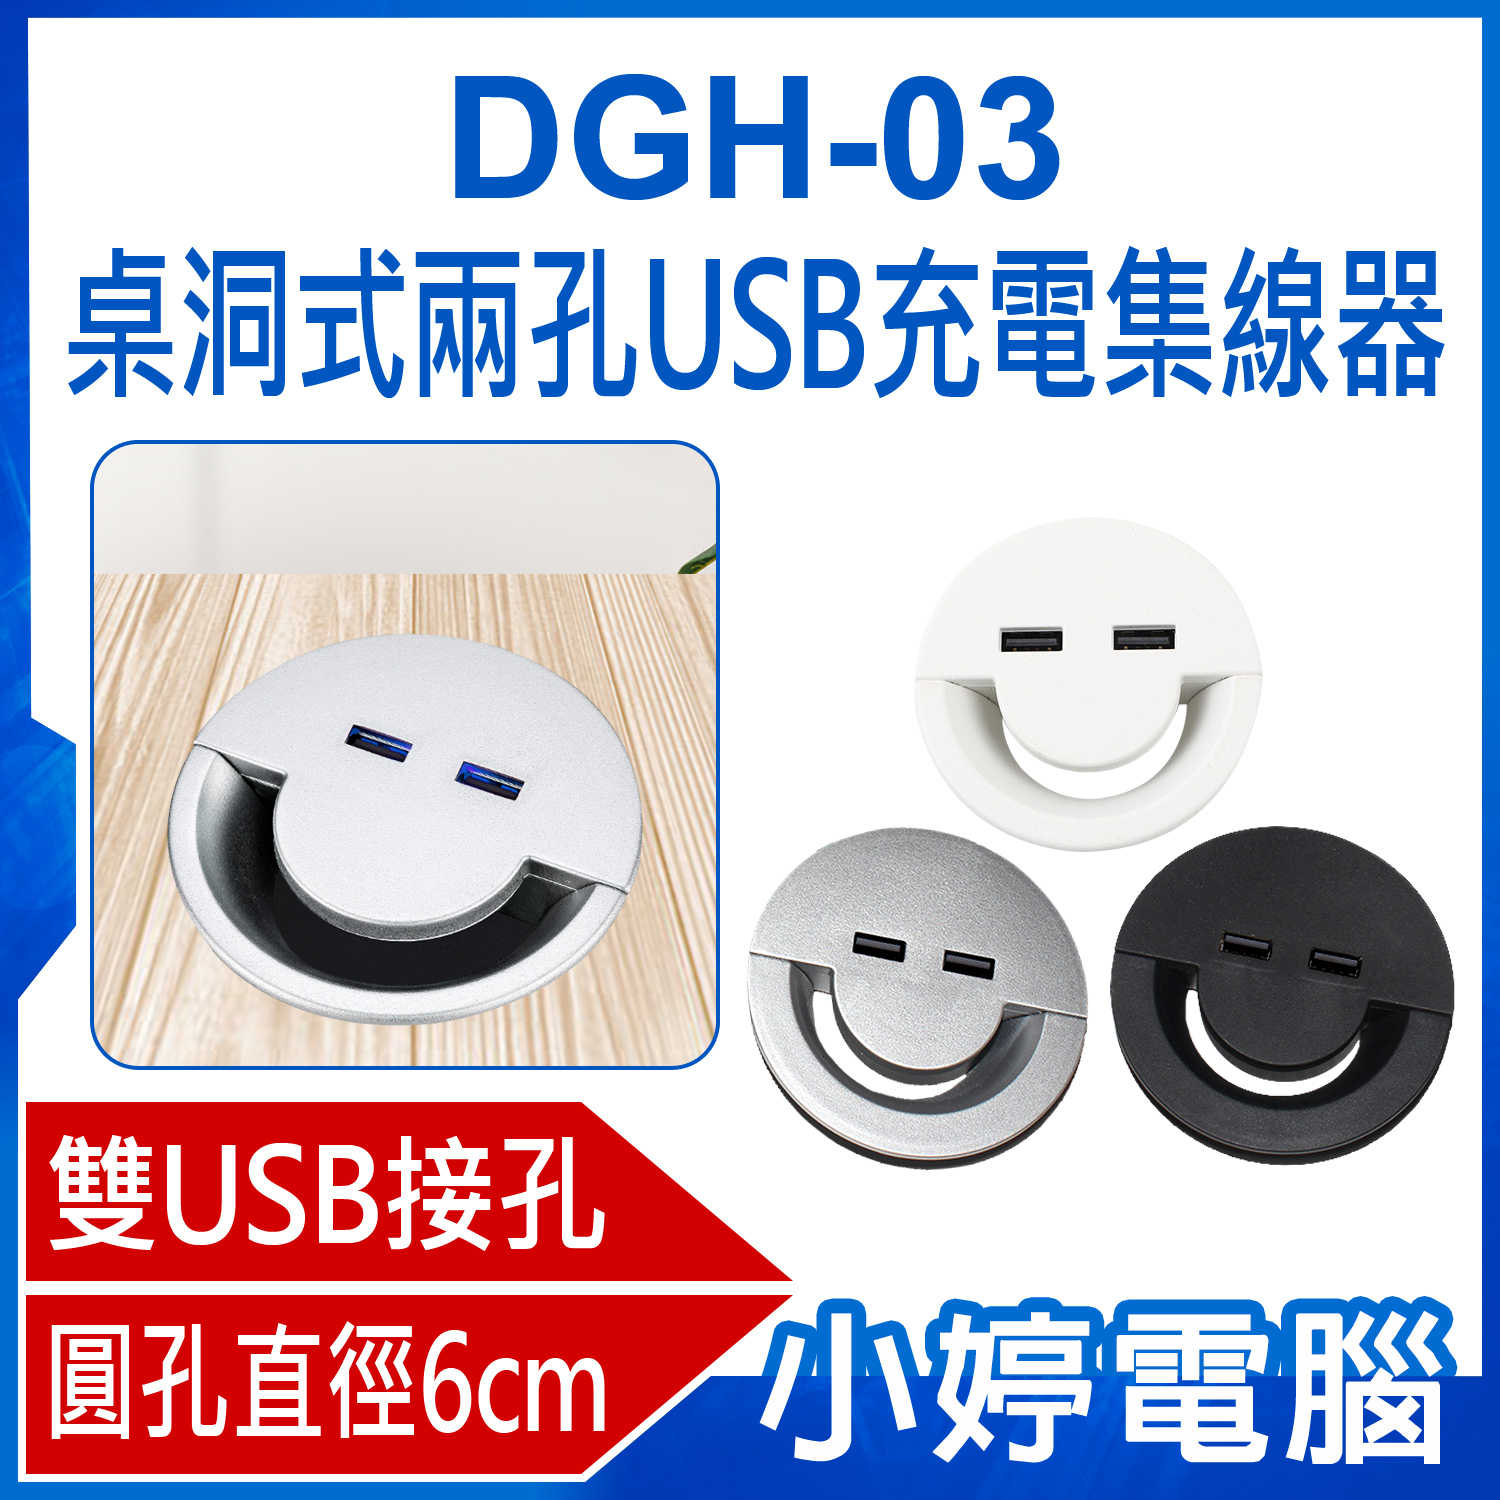 【小婷電腦】DGH-03 桌洞式兩孔USB充電集線器 雙USB接口 充電延長線 適用直徑6cm圓孔桌面